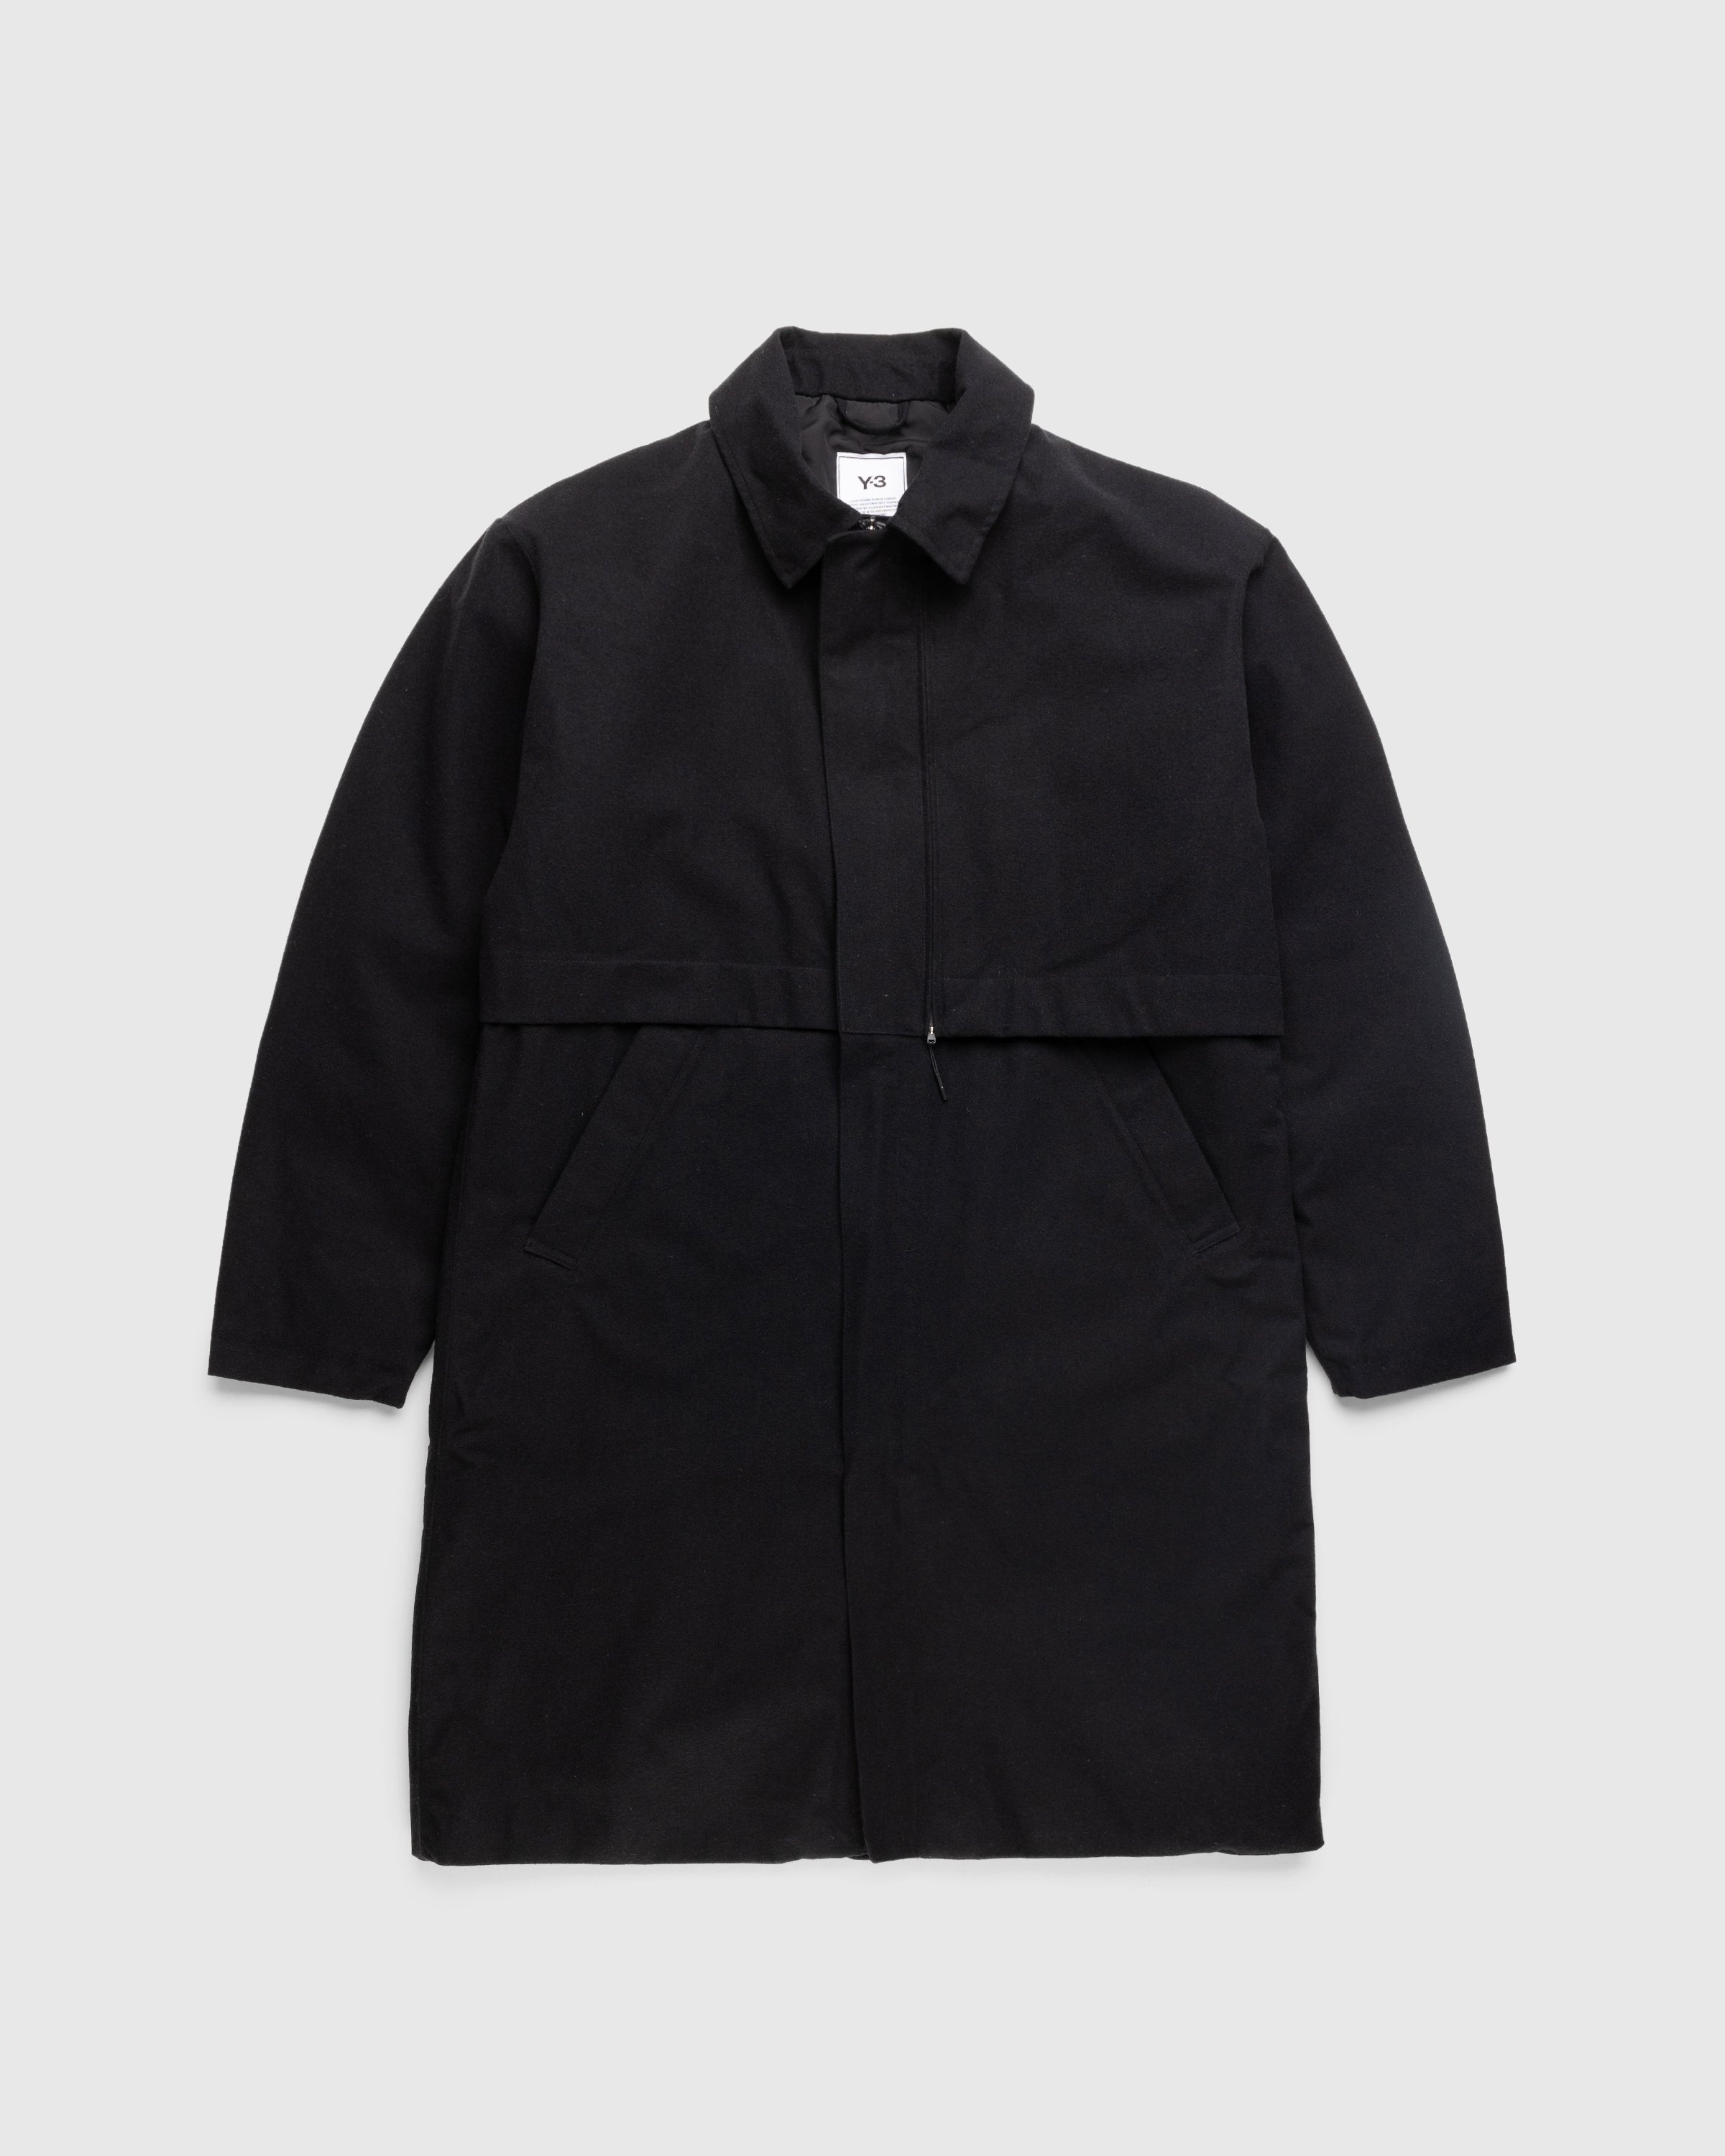 Y-3 – CL RGTX Coat - Outerwear - Black - Image 1